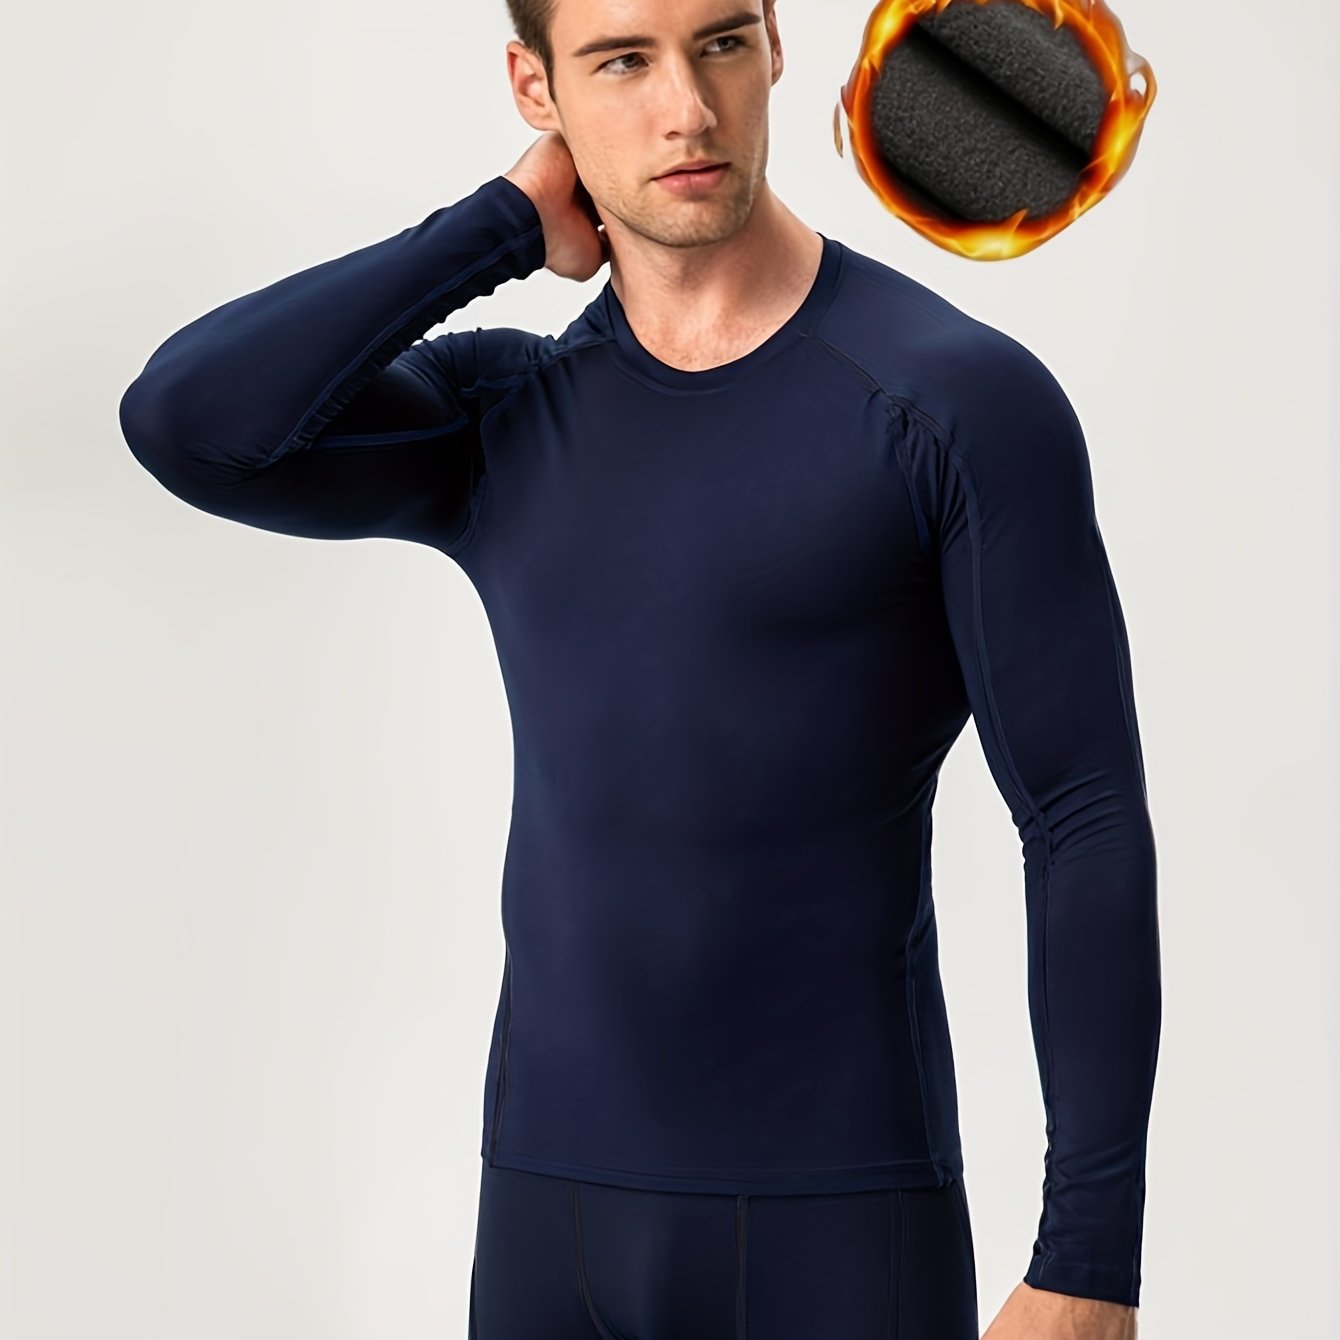 Sous-vêtement thermique pour homme, couche de base doublée en polaire avec  haut et bas isolés pour temps froid. 